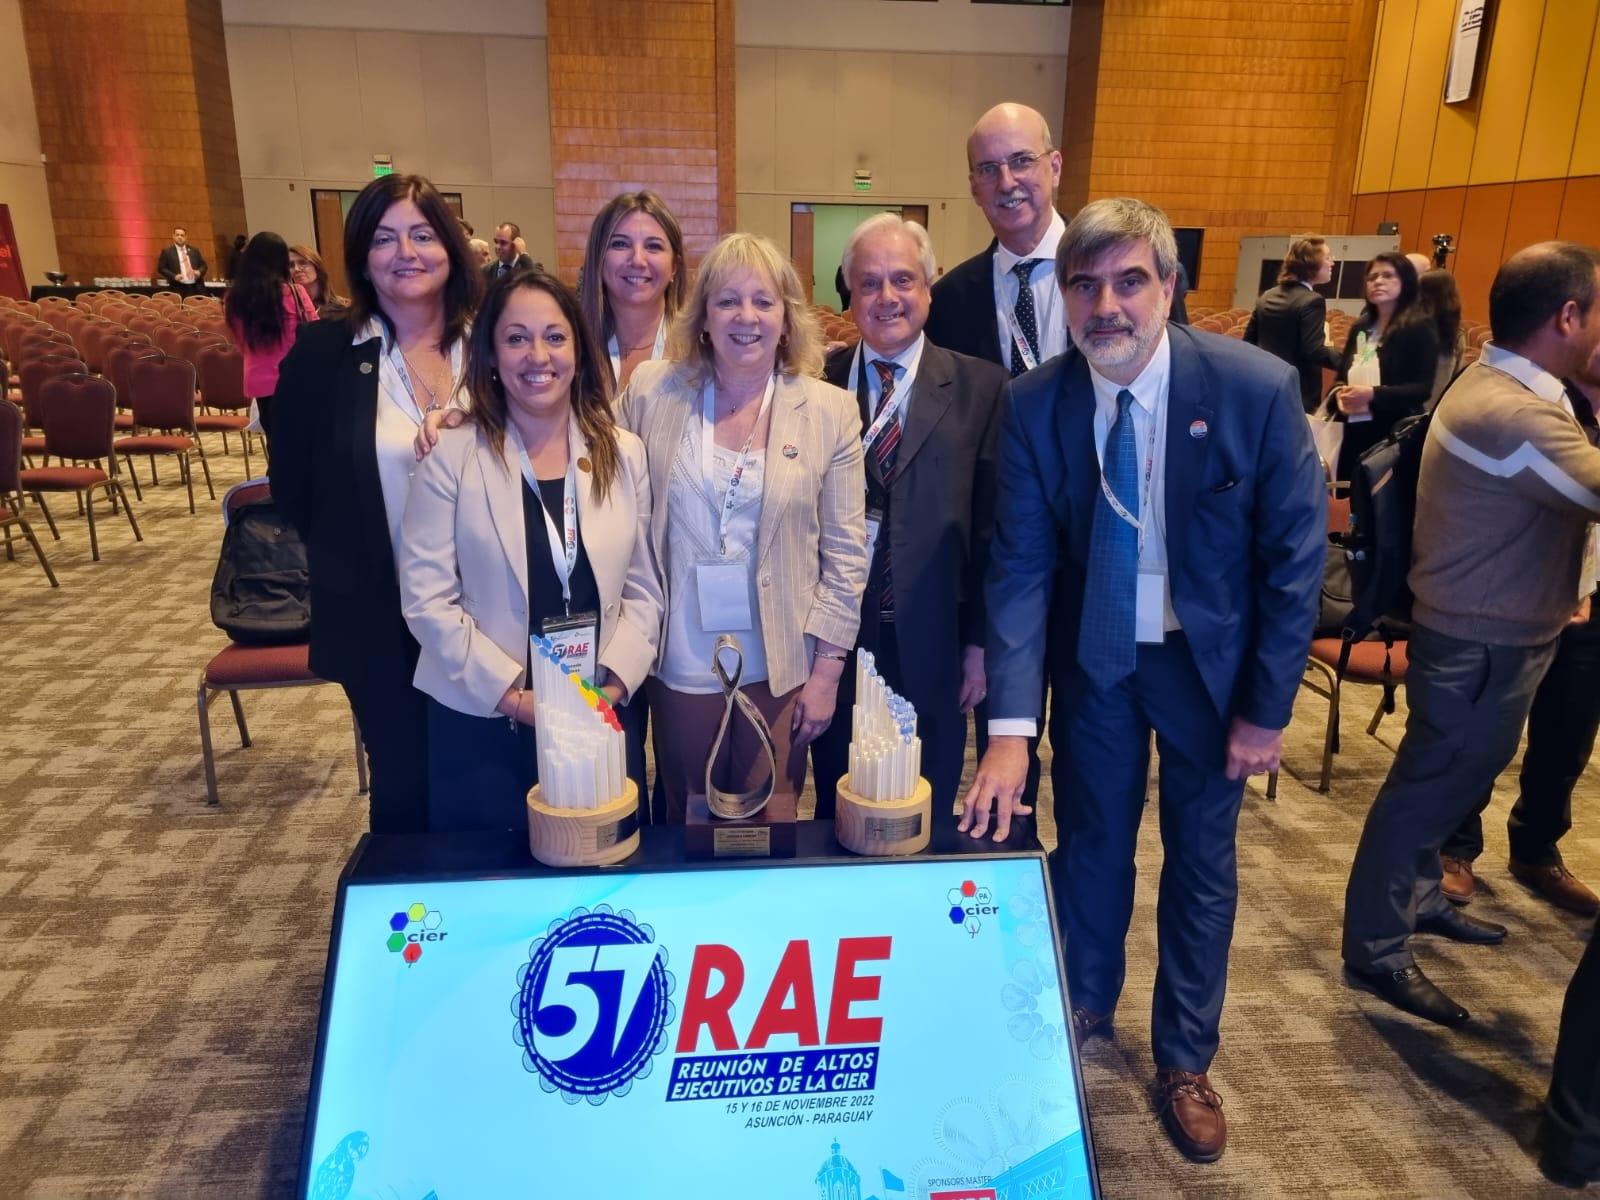 Delegación de UTE con los premios obtenidos en la edición N° 57 de la Reunión de Altos Ejecutivos 2022 (RAE) 